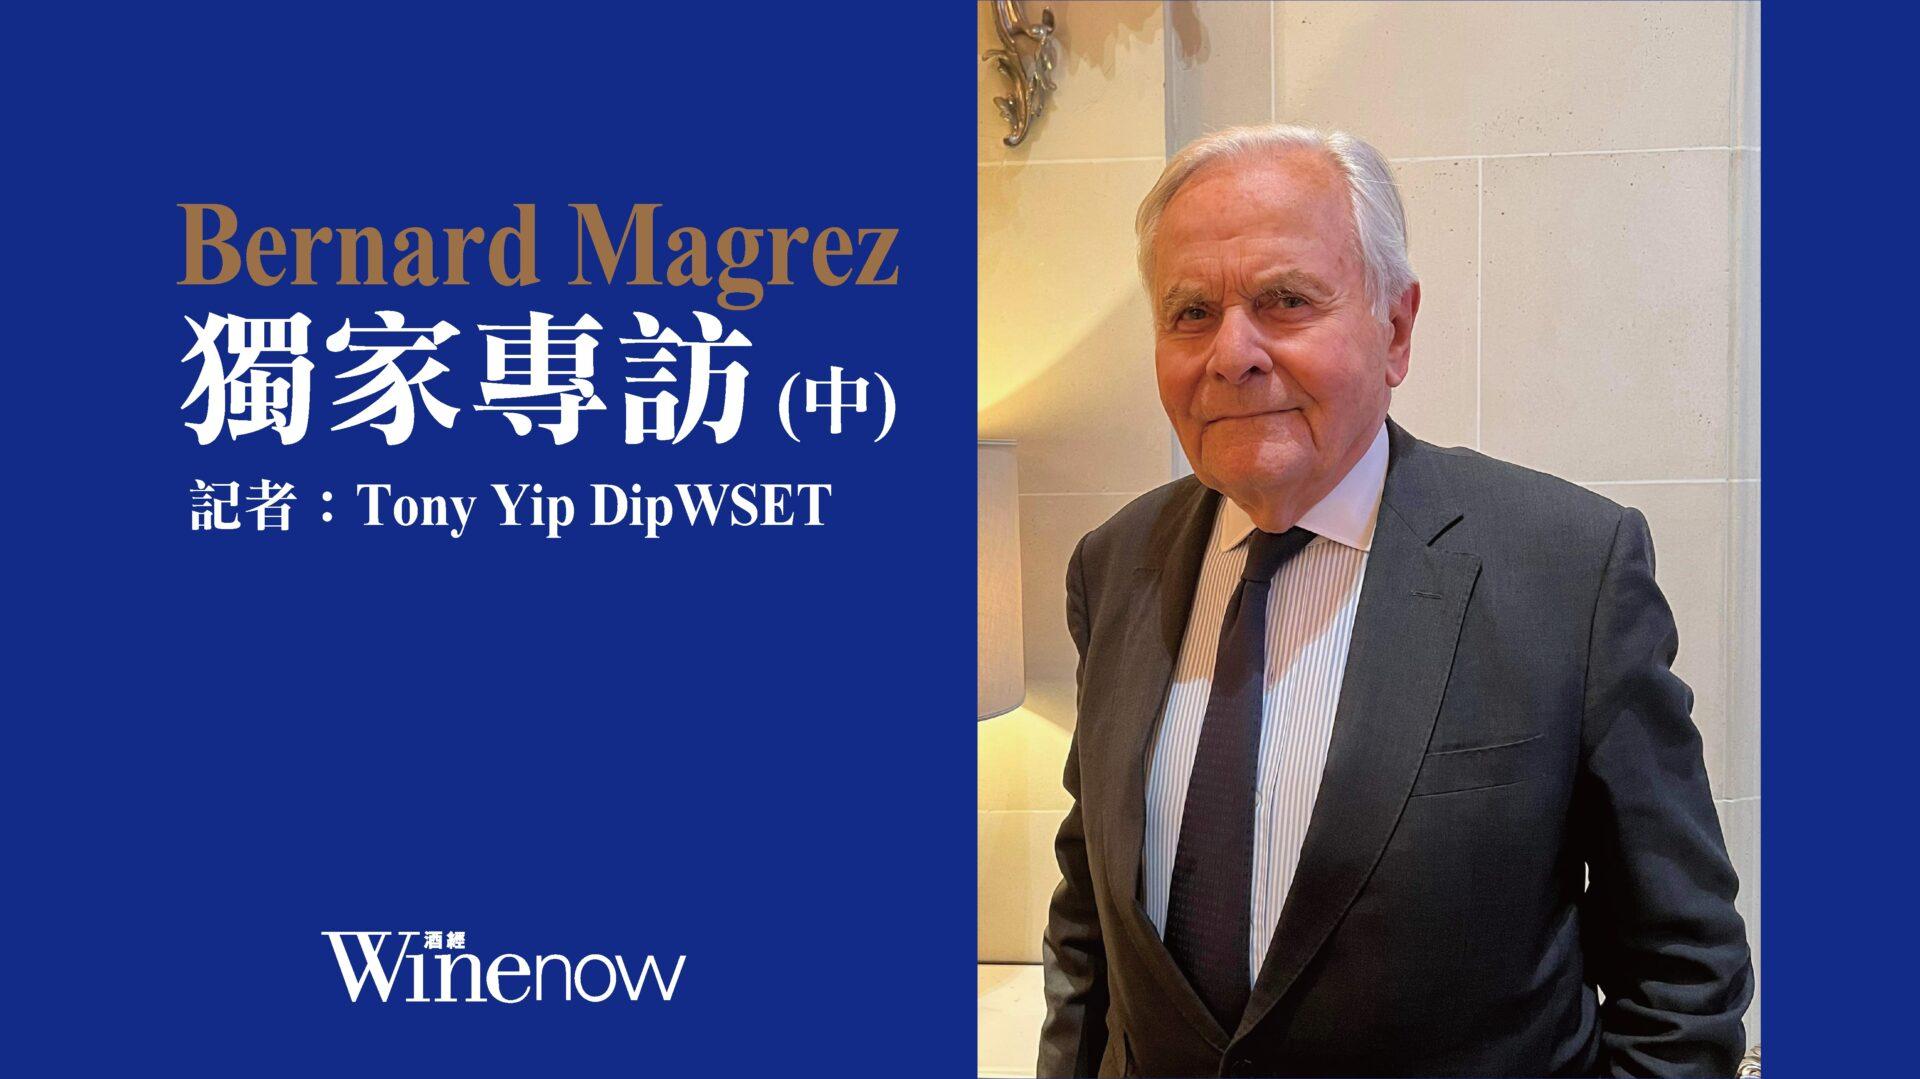 獨家專訪「雙金匙」酒業大亨 Bernard Magrez (中) - WineNow HK